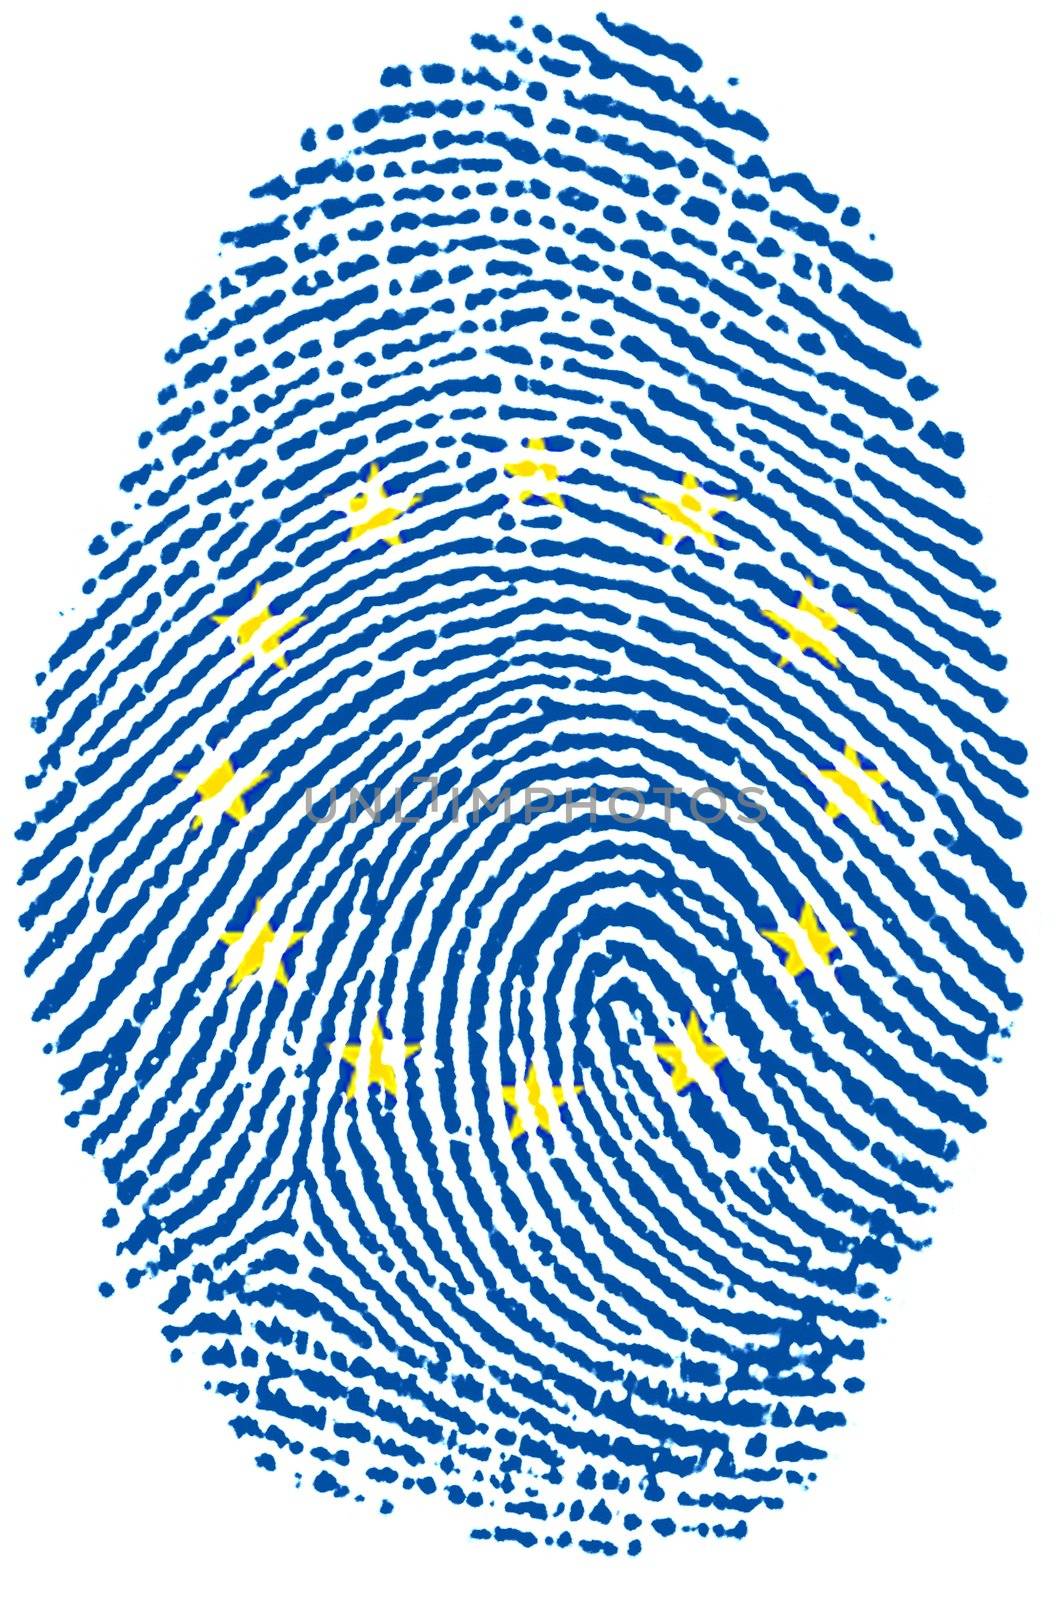 Fingerprint - DSC_1513_euro.jpg by rigamondis